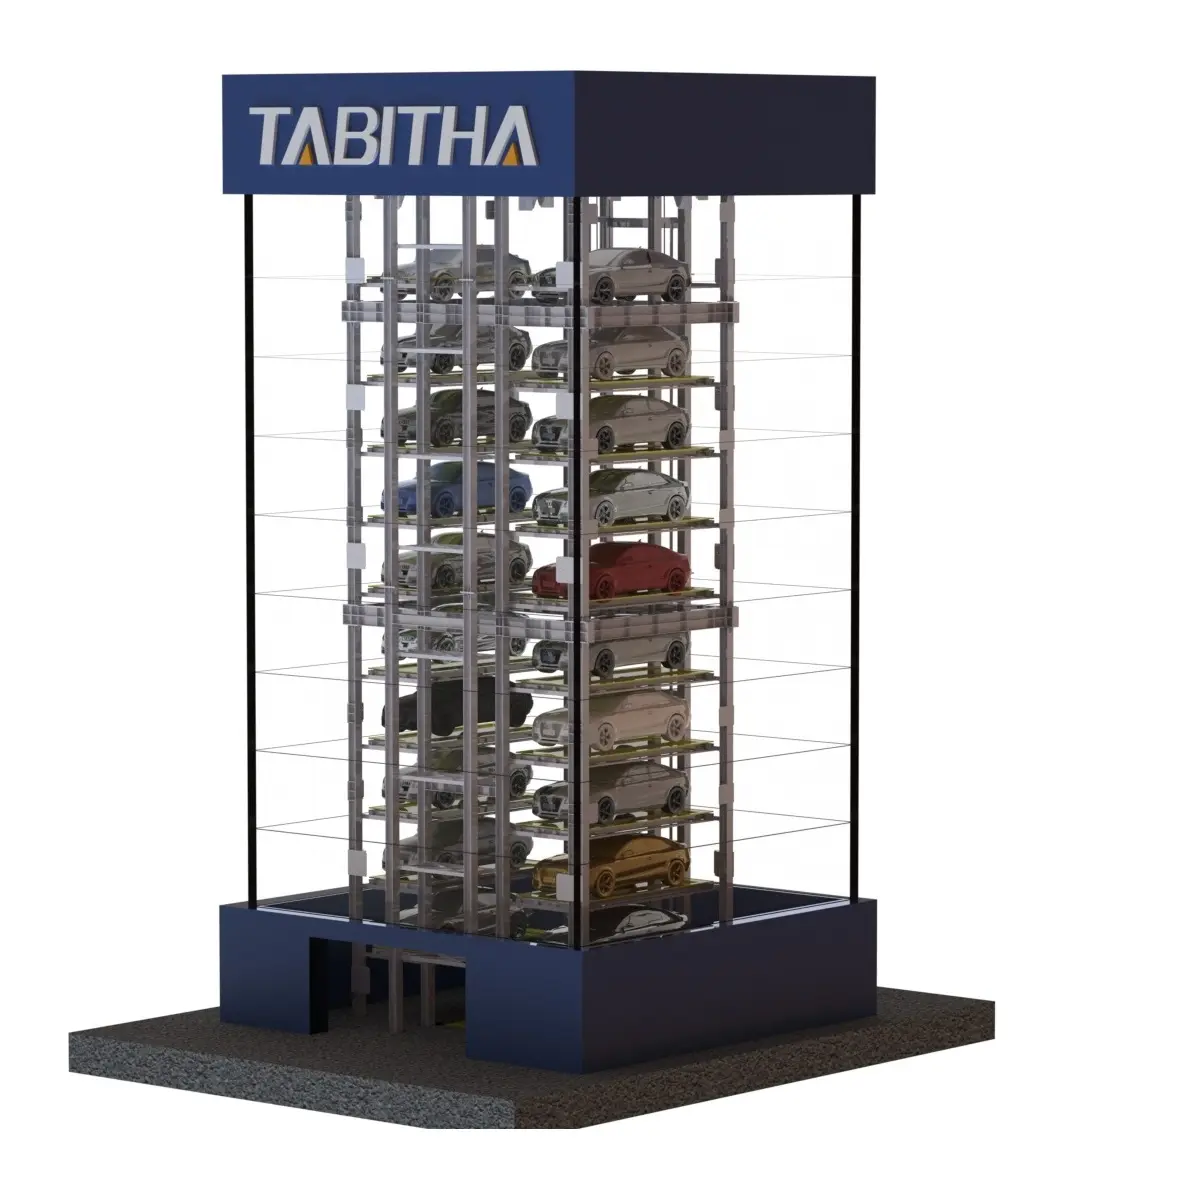 Kule park sistemi Tabitha otomatik park sistemi akıllı otopark kulesi